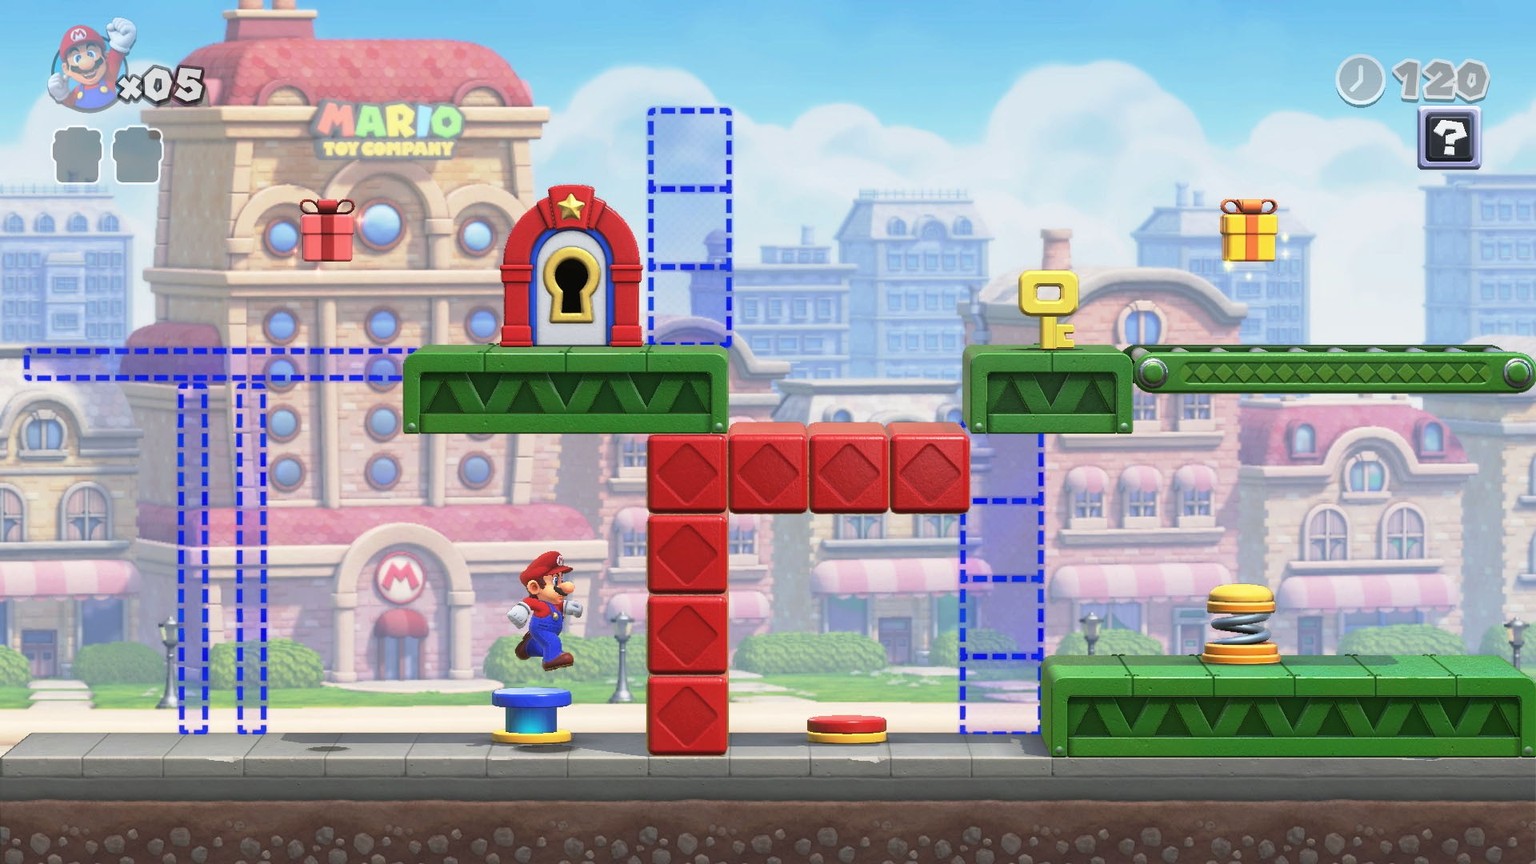 Super Mario muss zuerst den Schlüssel schnappen, bevor er ins nächste Level vordringen kann.